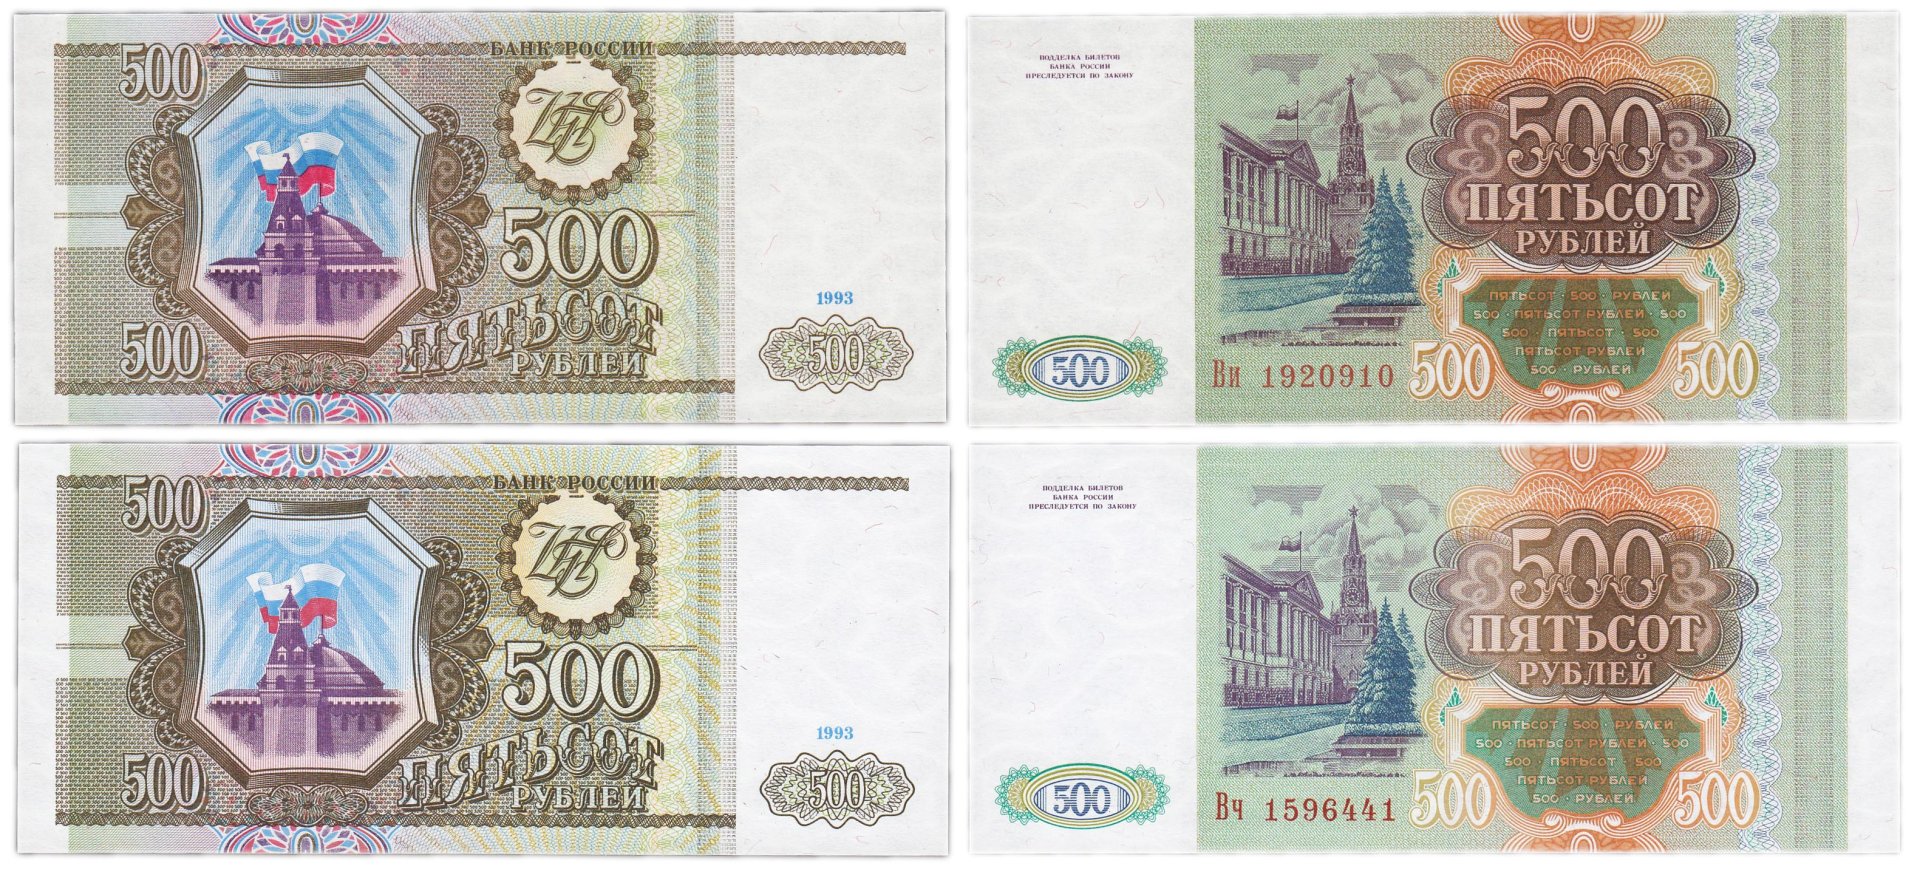 14 500 в рублях. 500 Тысяч рублей 1993. Пятьсот рублей 1993 года. 500 Рублей 1993 года бумажные. 100 И 500 рублей 1993 года бумажные.